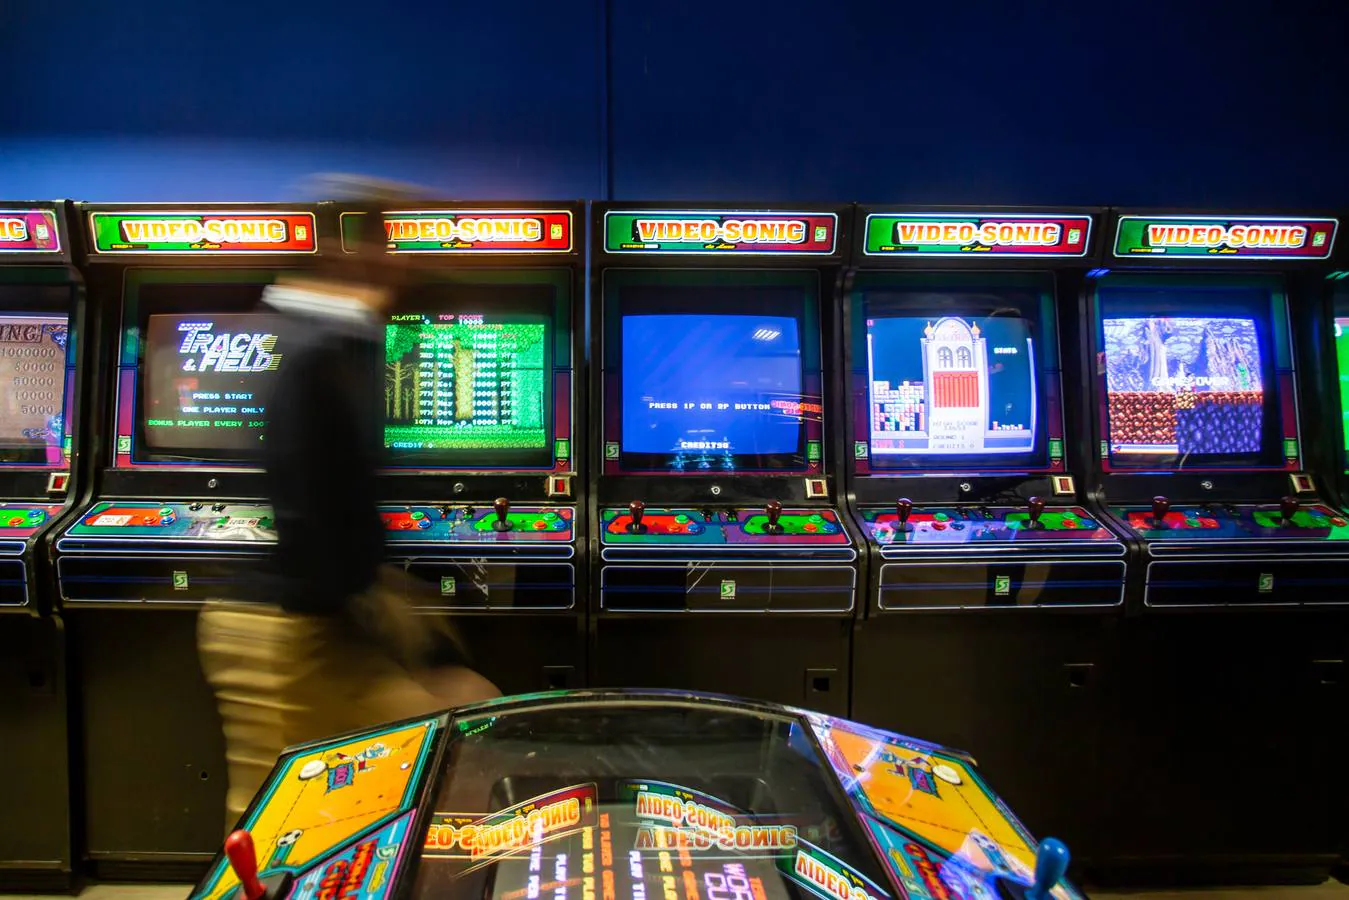 Arcade Planet: el salón de videojuegos de los 80 más grande de España está  en Sevilla - Sevilla Secreta